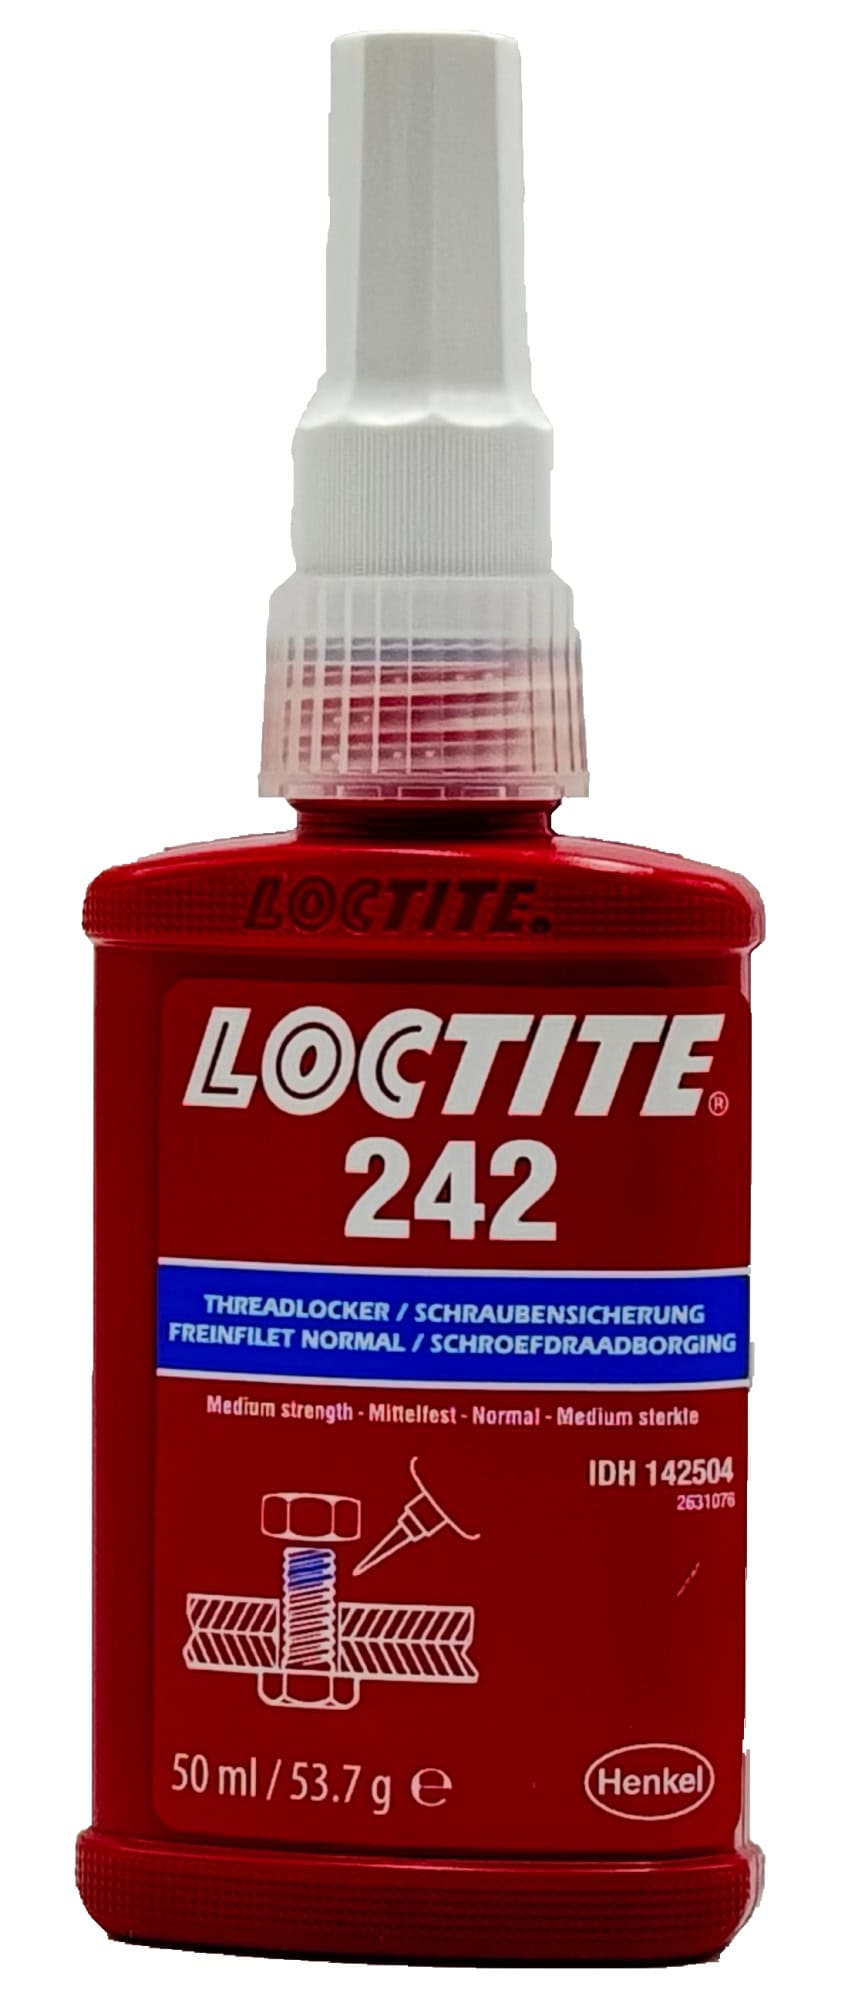 Henkel™ Loctite® Schraubensicherung 242, 50 ml, Blau, 142504, Universell einsetzbar